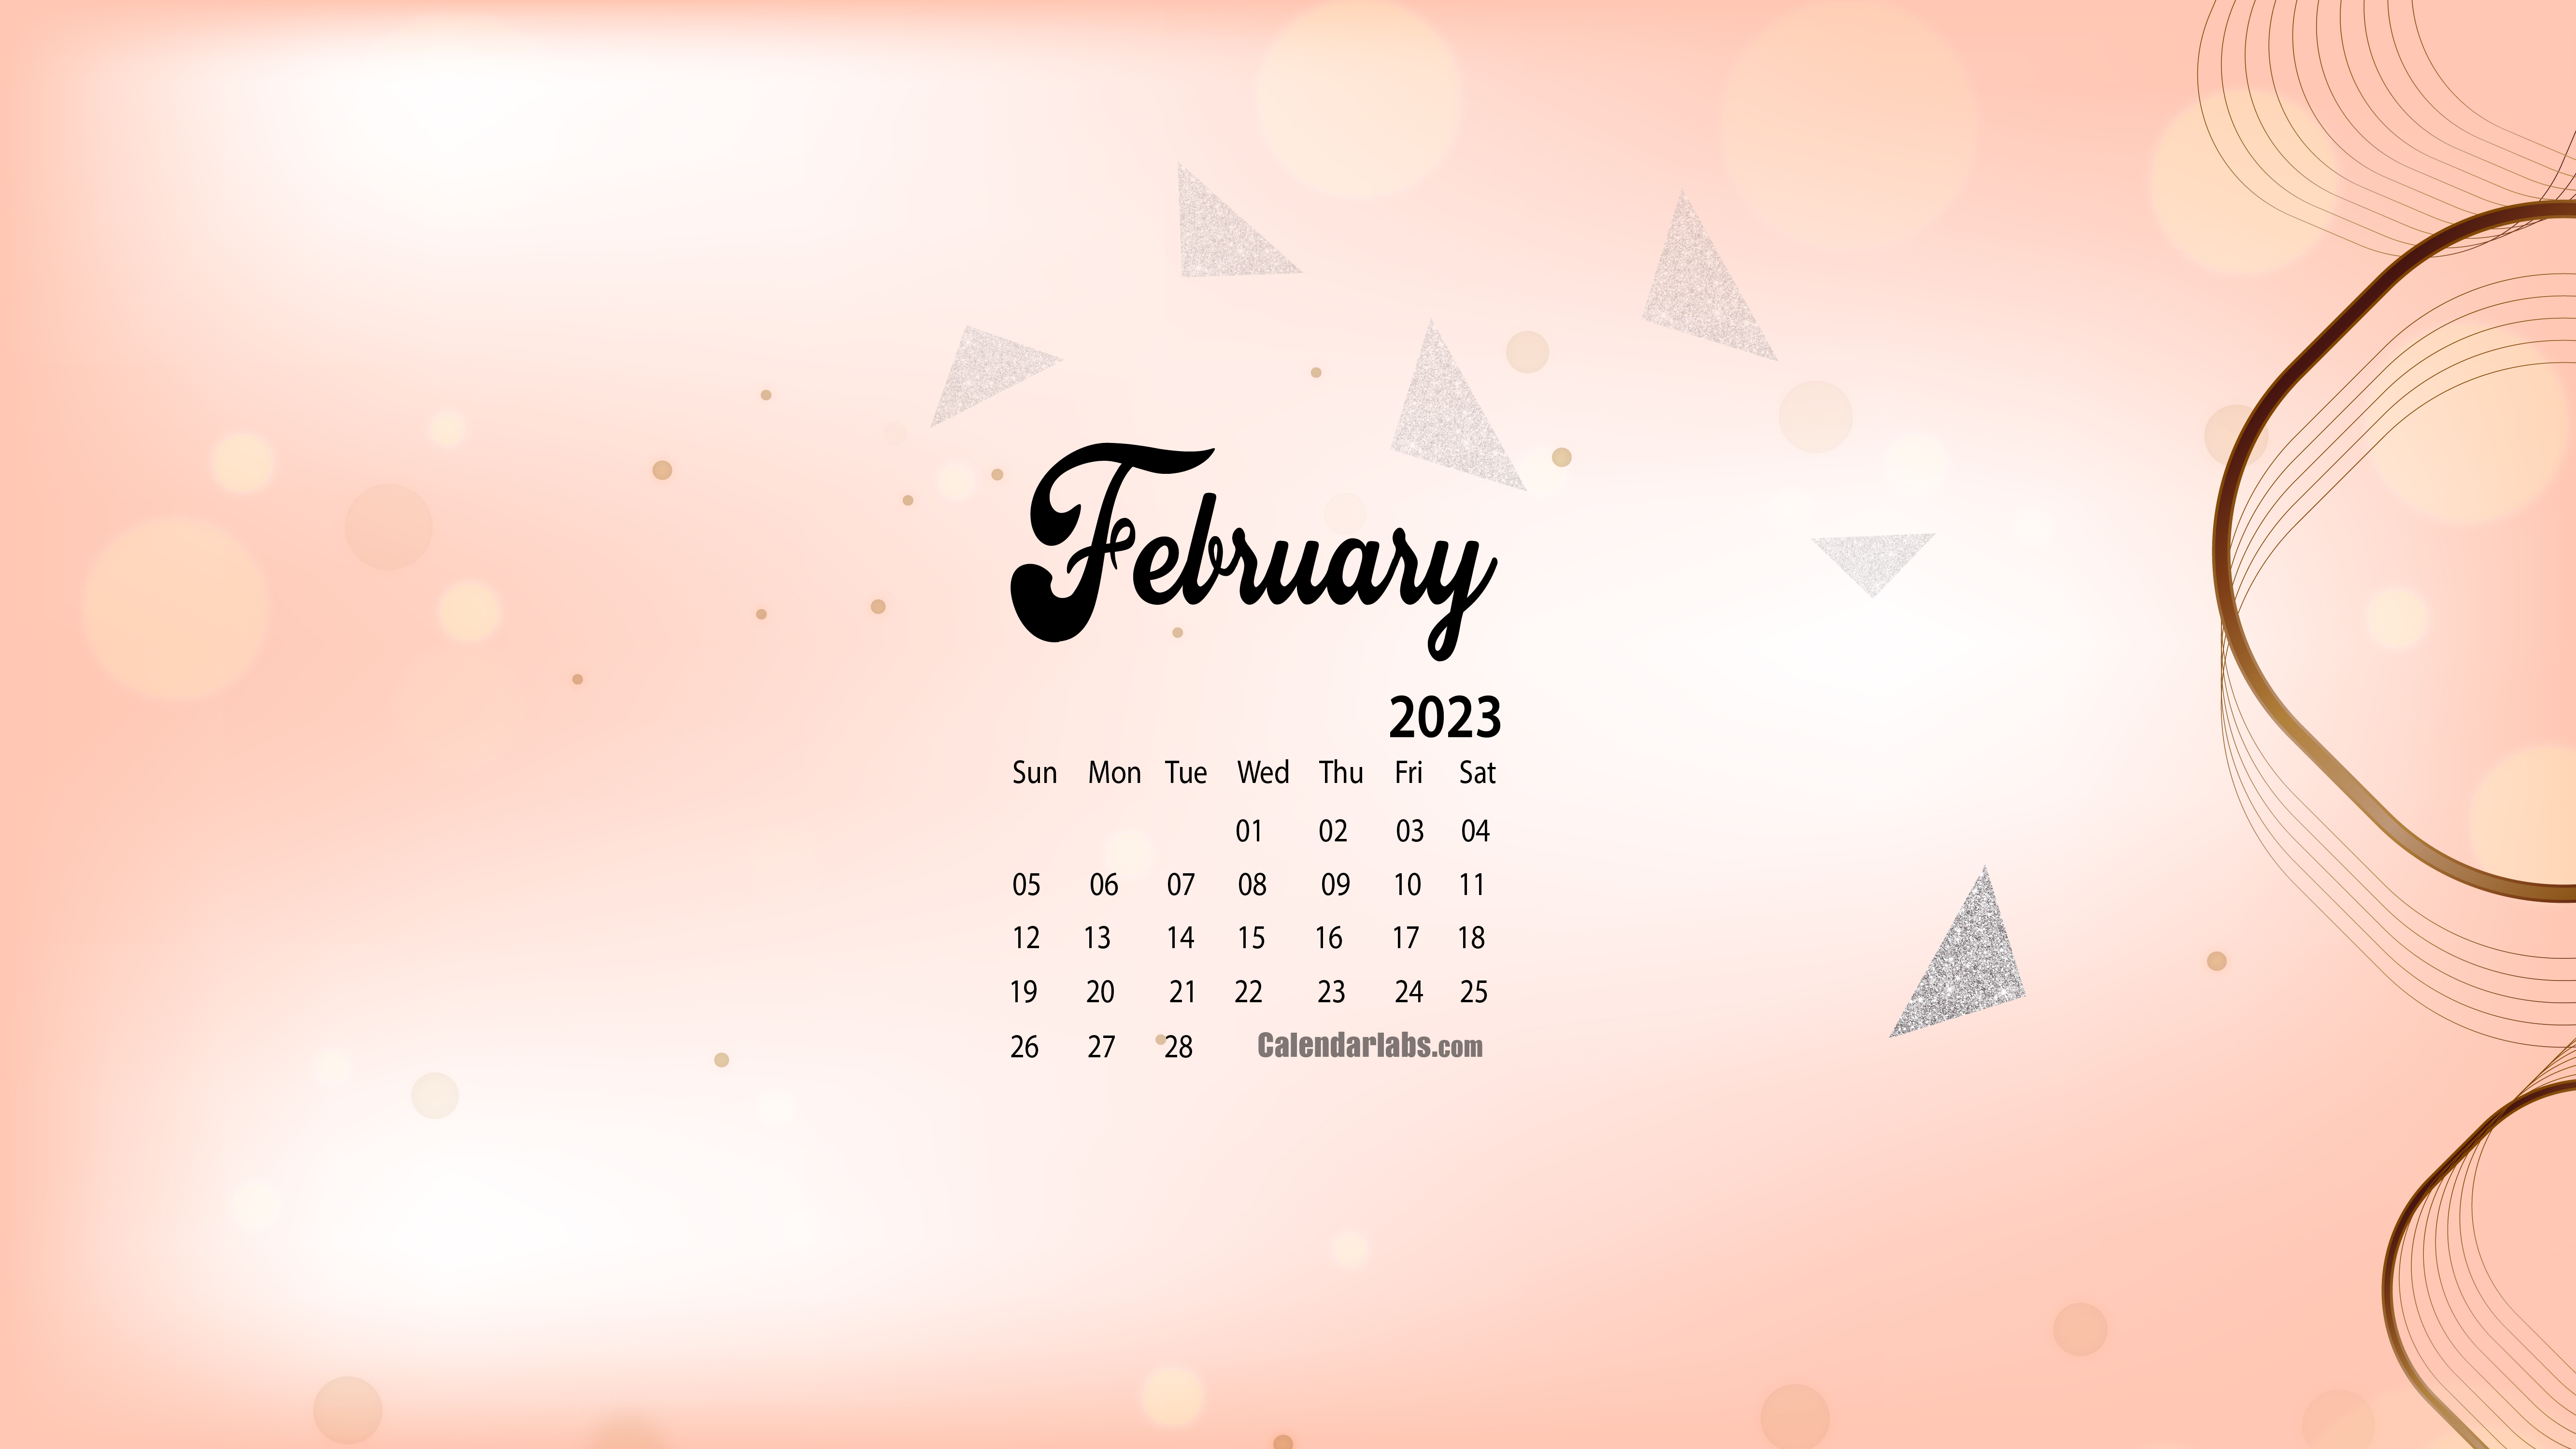 Share 80 February Wallpaper Desktop Best Vn